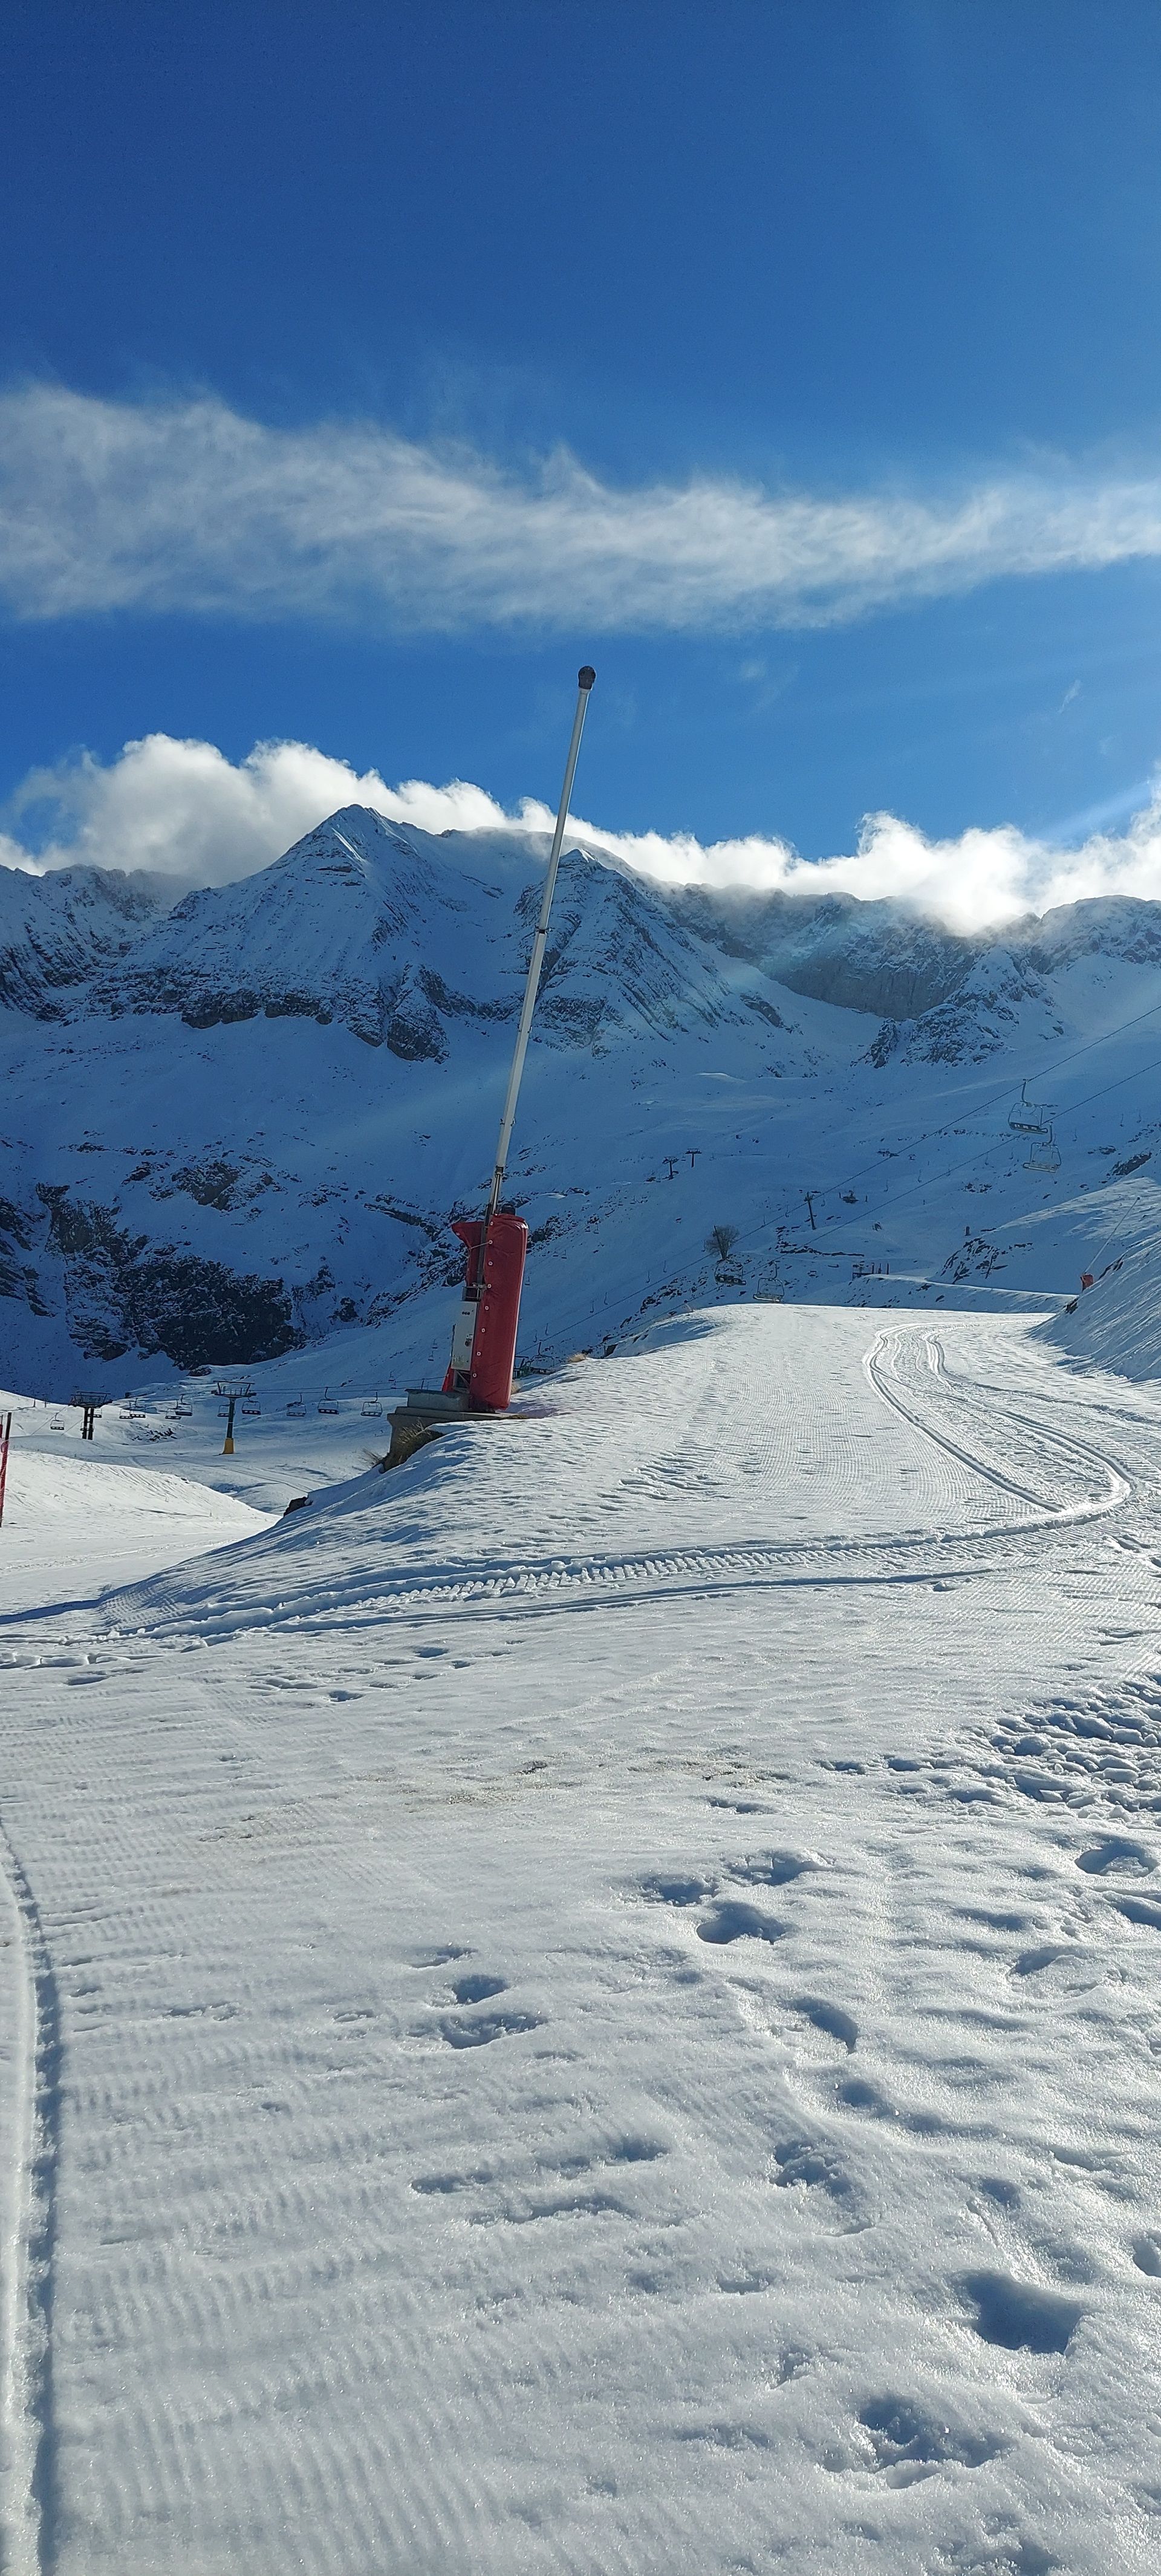 Formigal y Cerler amplian su oferta de kilómetros de pistas de esquí -  Noticias Nevasport - Toda actualidad de la nieve, esquí y montaña